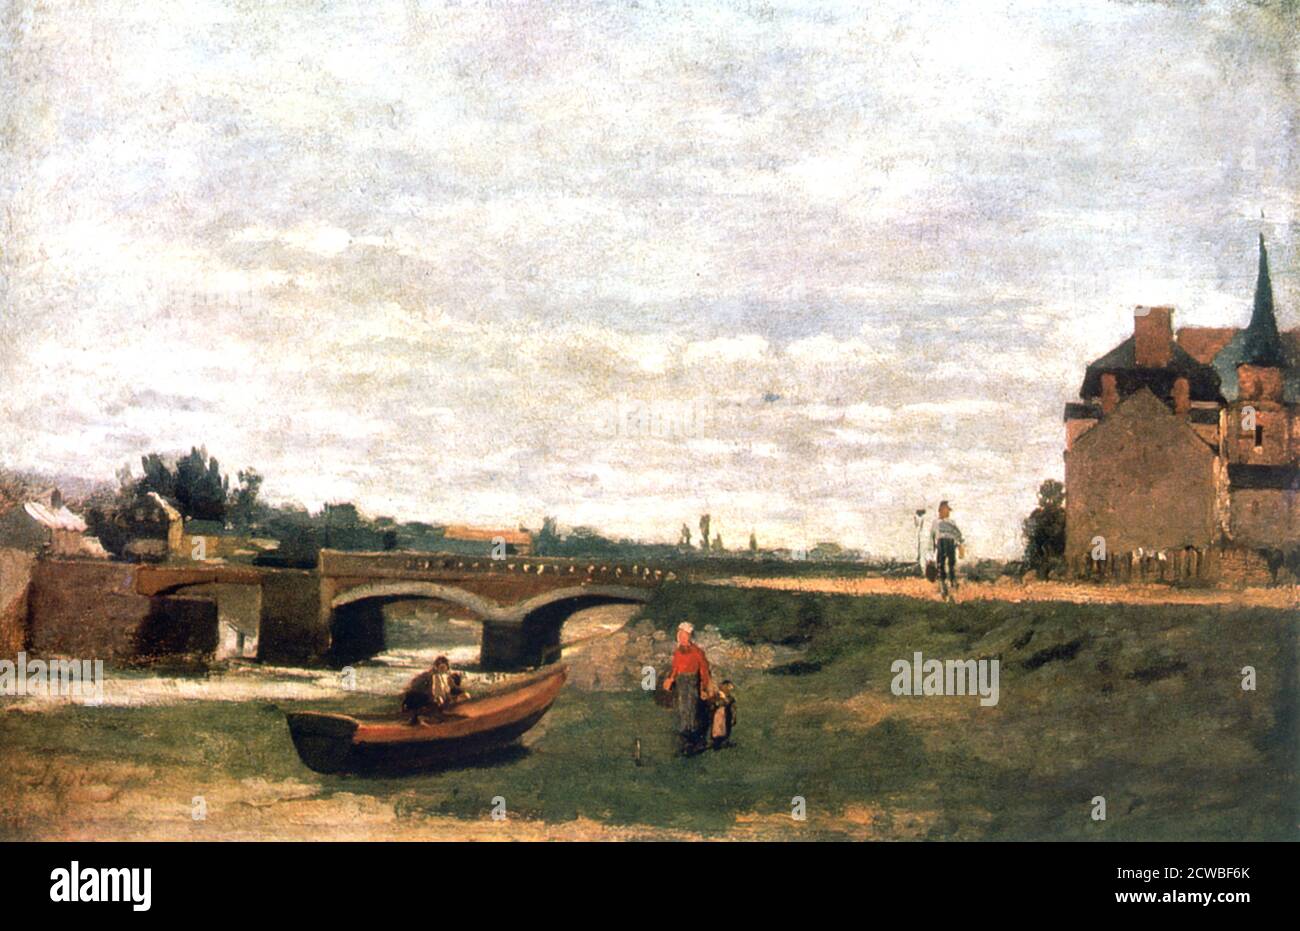 Vue sur le village', c1855-1892. Artiste: Stanislas Lepine. Lepine était un peintre français spécialisé dans les paysages, en particulier les vues sur la Seine. Banque D'Images